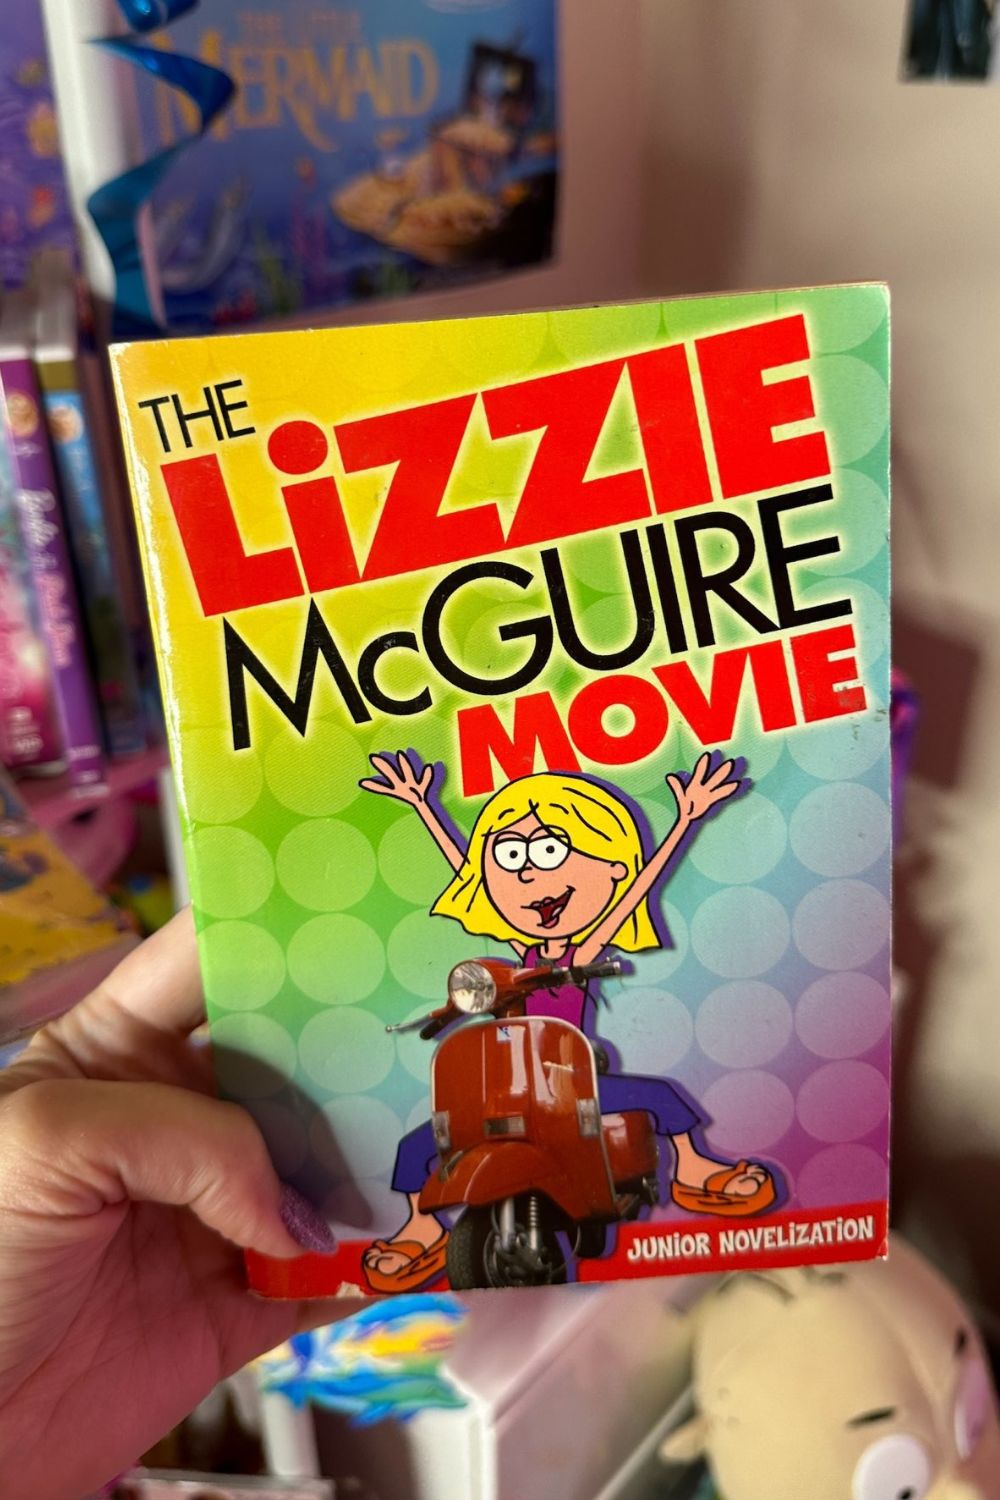 THE LIZZIE McGUIRE MOVIE BOOK*